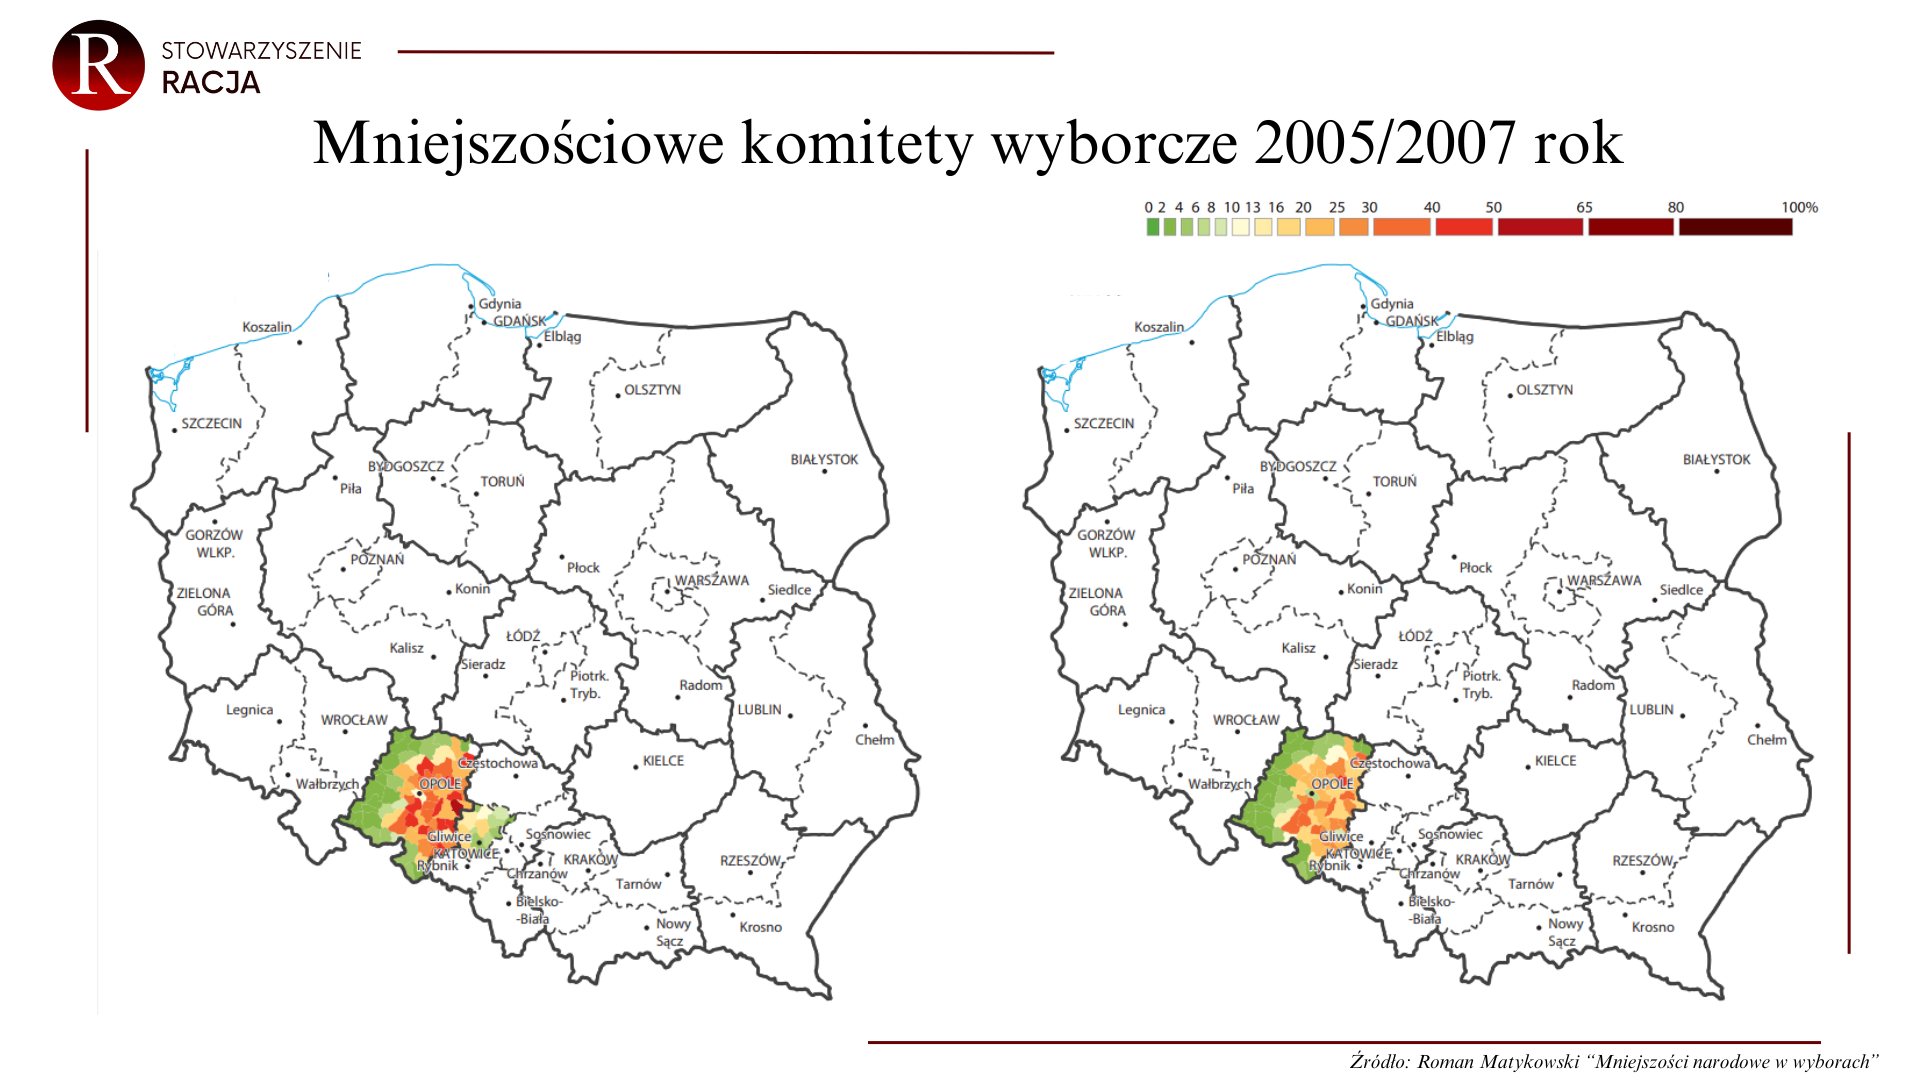 Mniejszościowe komitety wyborcze 2005/2007 rok